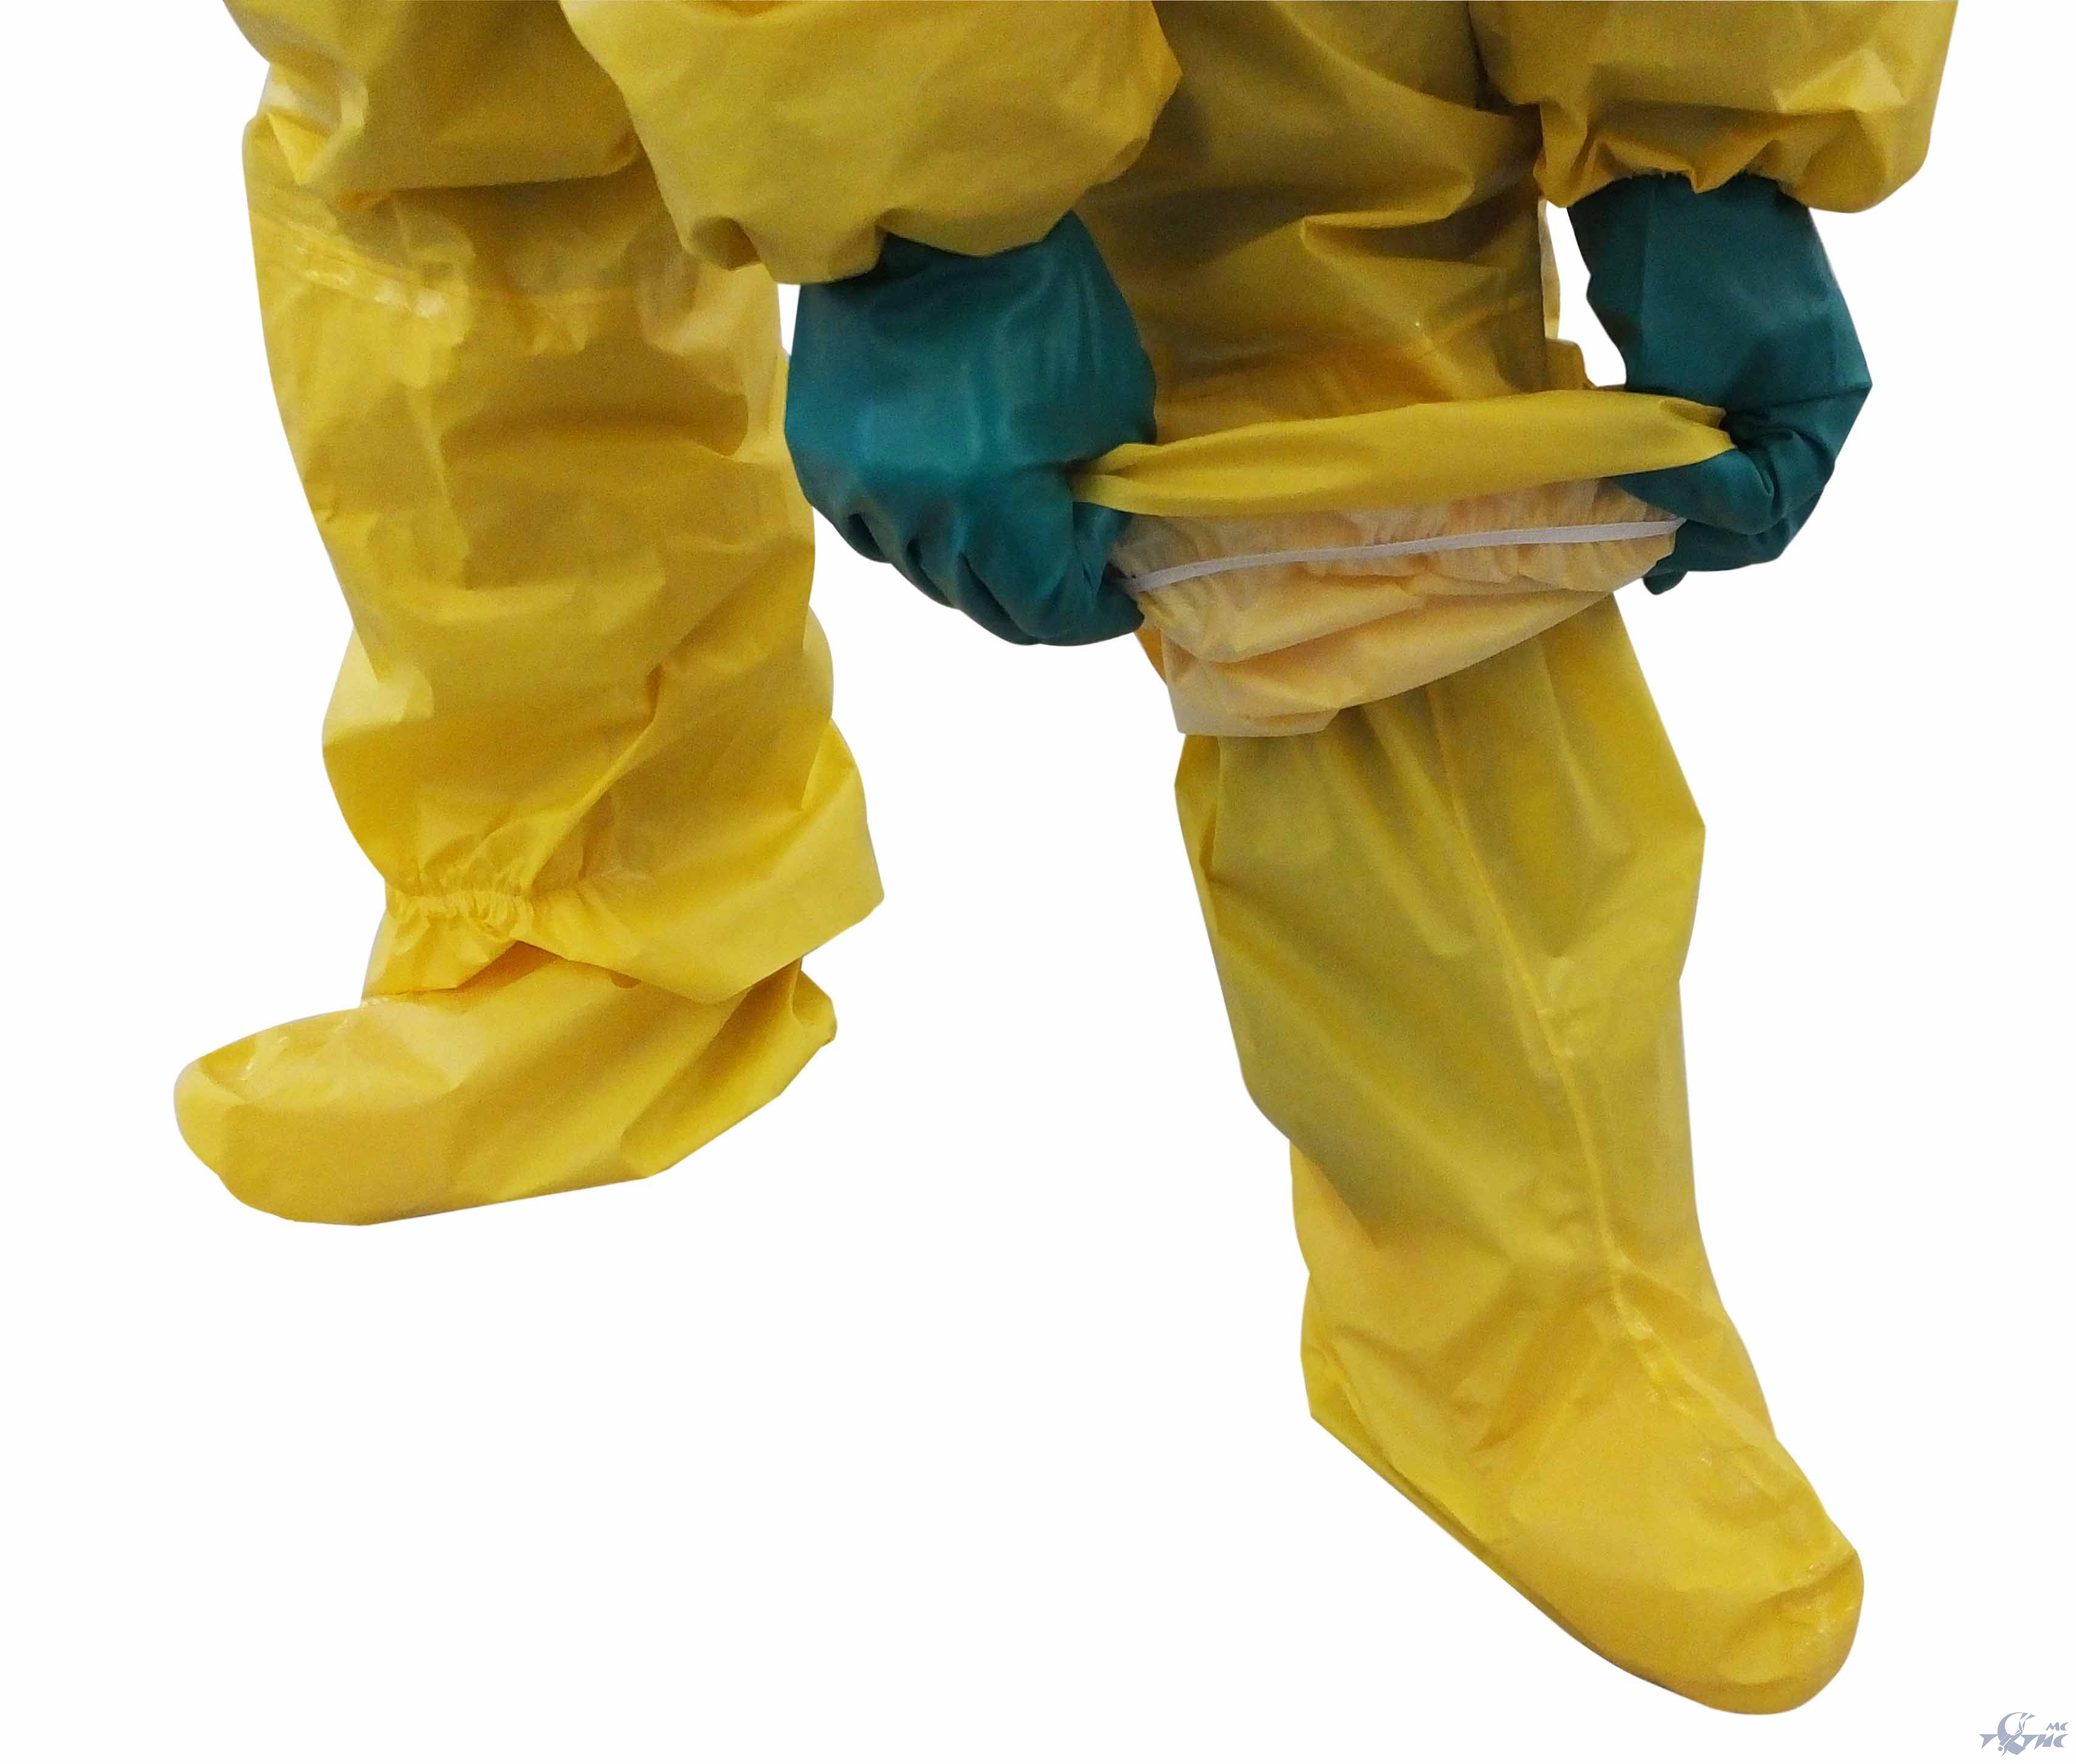 Тетис МС, Тетис Медицинские Системы, Одноразовый защитный костюм EОBO-10 (желтый)